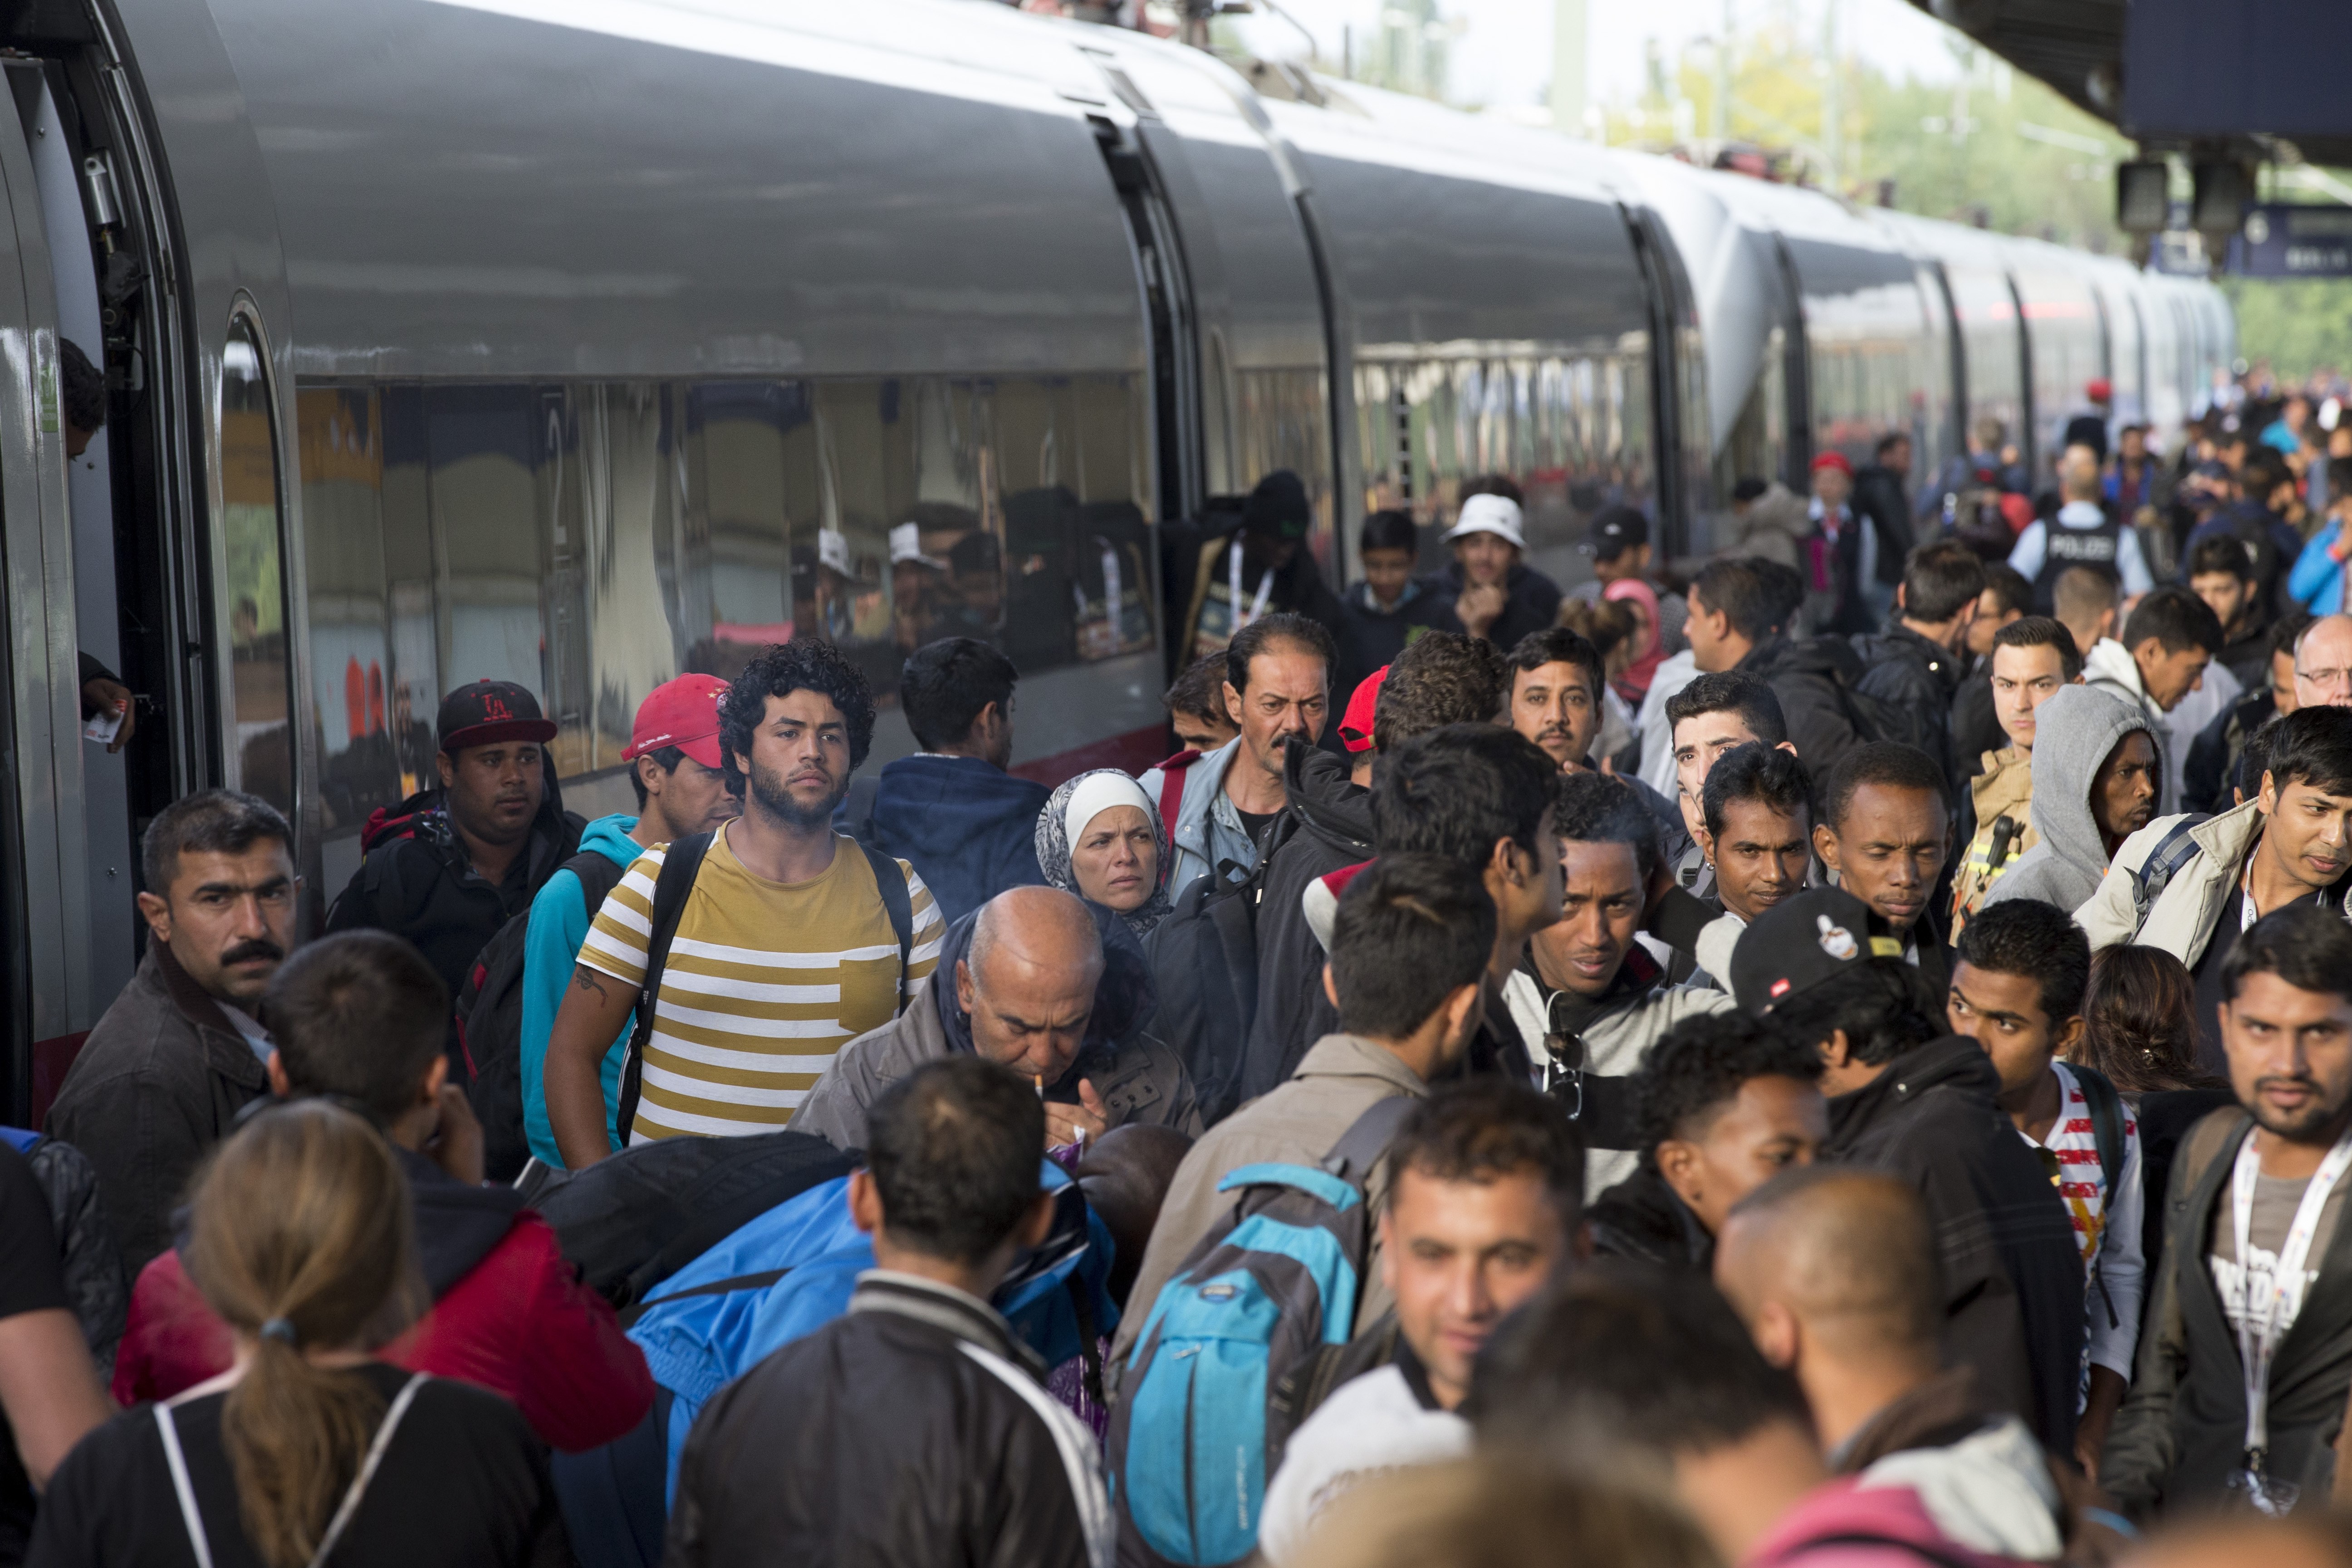 CDU-Politiker von Stetten warnt vor „Jahrhundertfehler“ in Flüchtlingspolitik